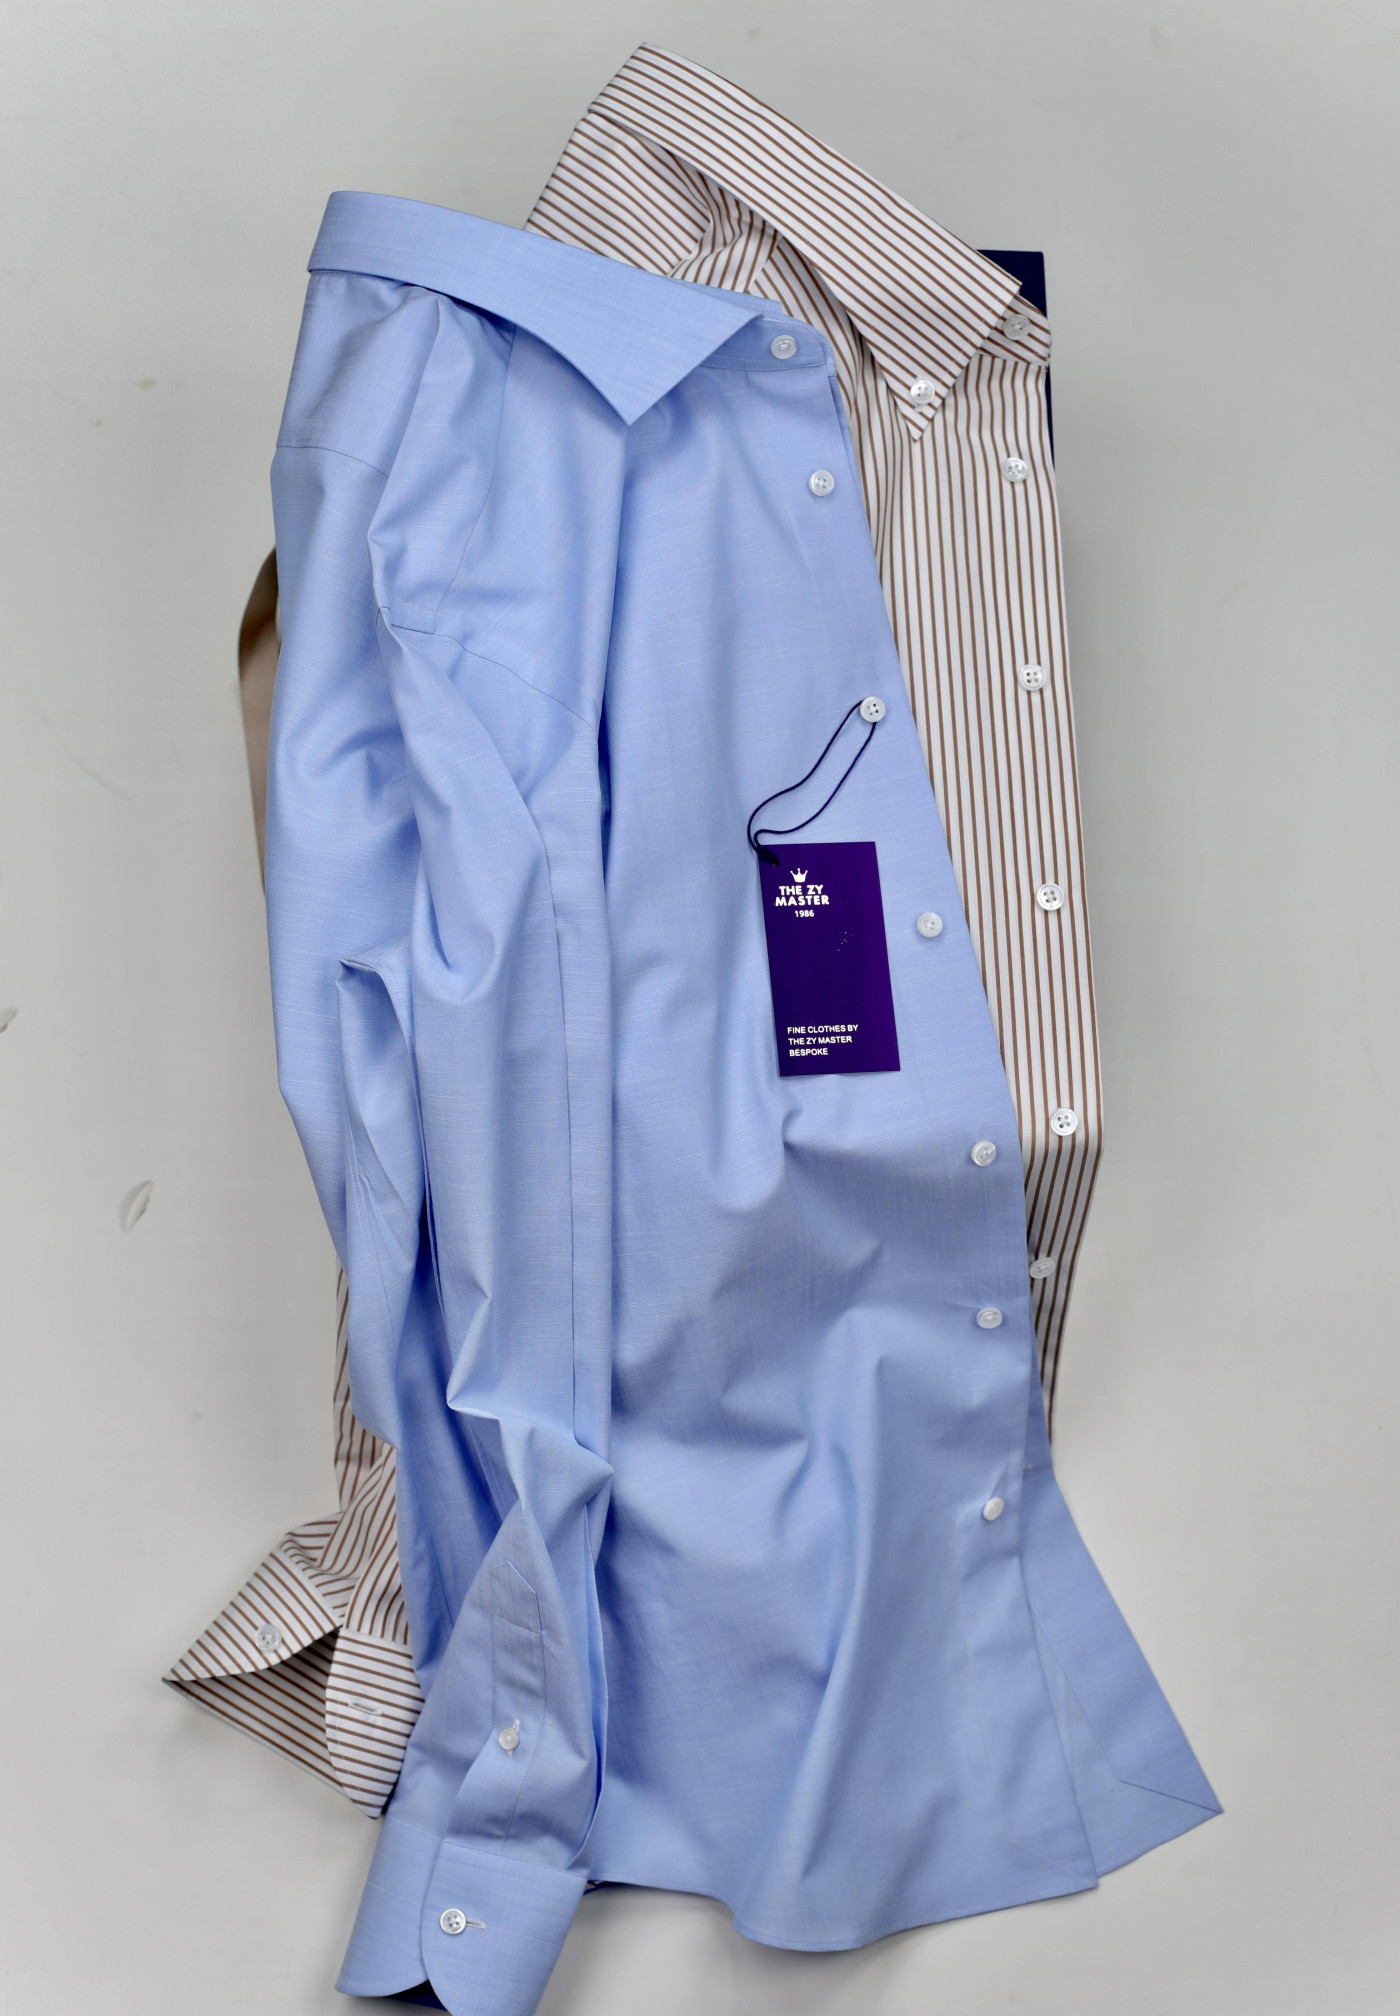 意大利進口 天藍色高級配色 優雅定制男士襯衫《時間的選擇》